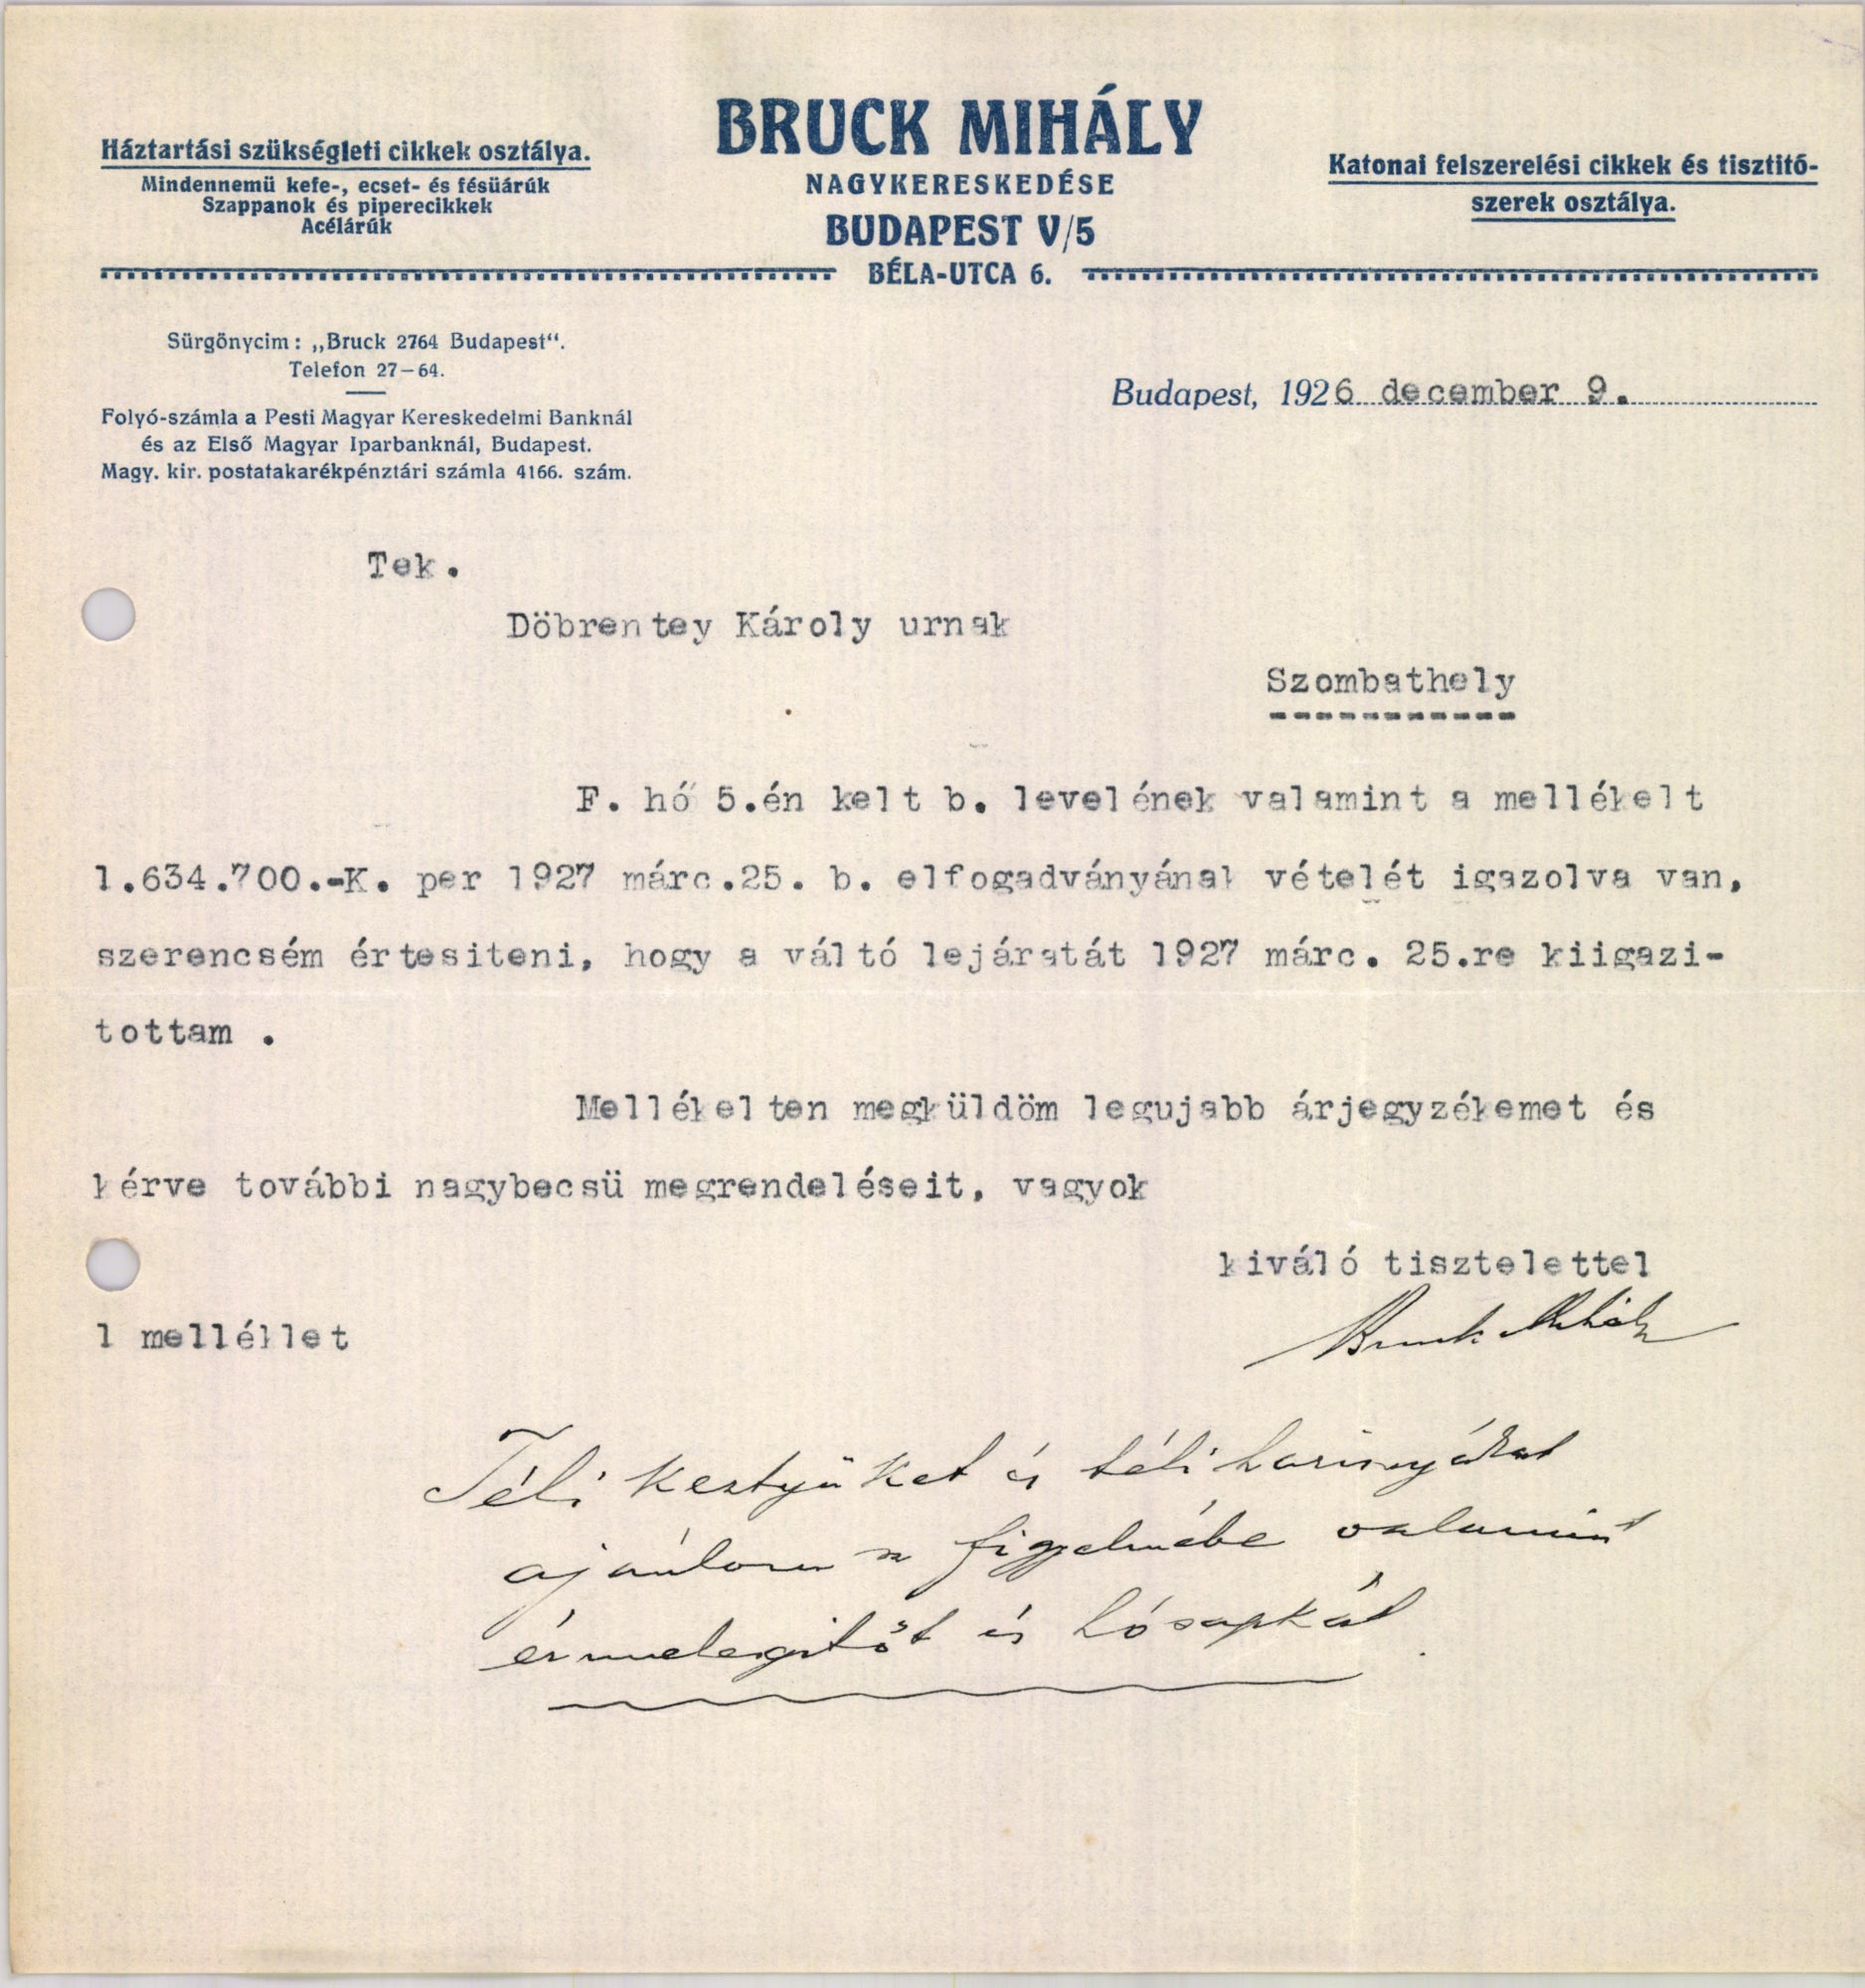 Bruck Mihály nagykereskedése (Magyar Kereskedelmi és Vendéglátóipari Múzeum CC BY-NC-SA)